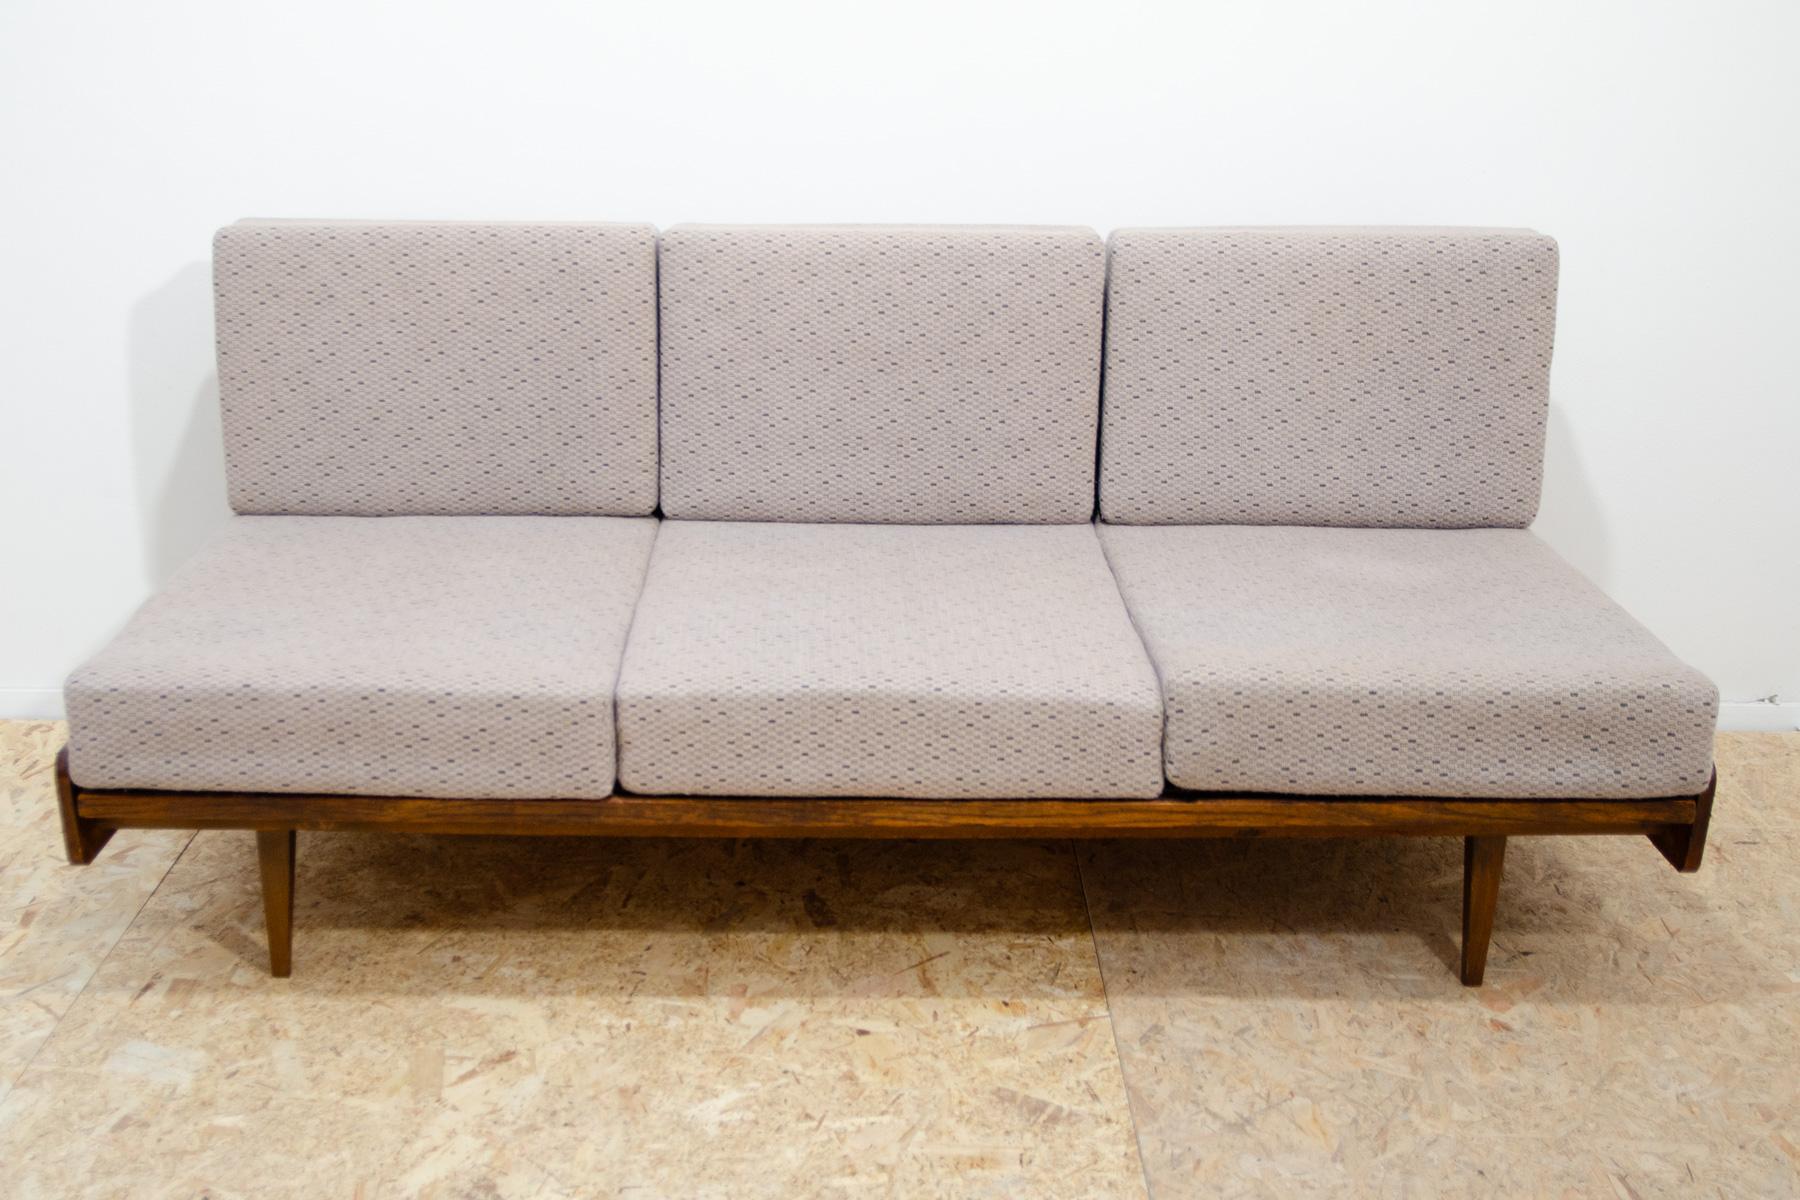 Ce canapé/sofabed du milieu du siècle a été fabriqué par la société Interiér Praha dans l'ancienne Tchécoslovaquie dans les années 1960. Le canapé est doté d'un mécanisme de traction que vous pouvez facilement utiliser pour plier le canapé en un